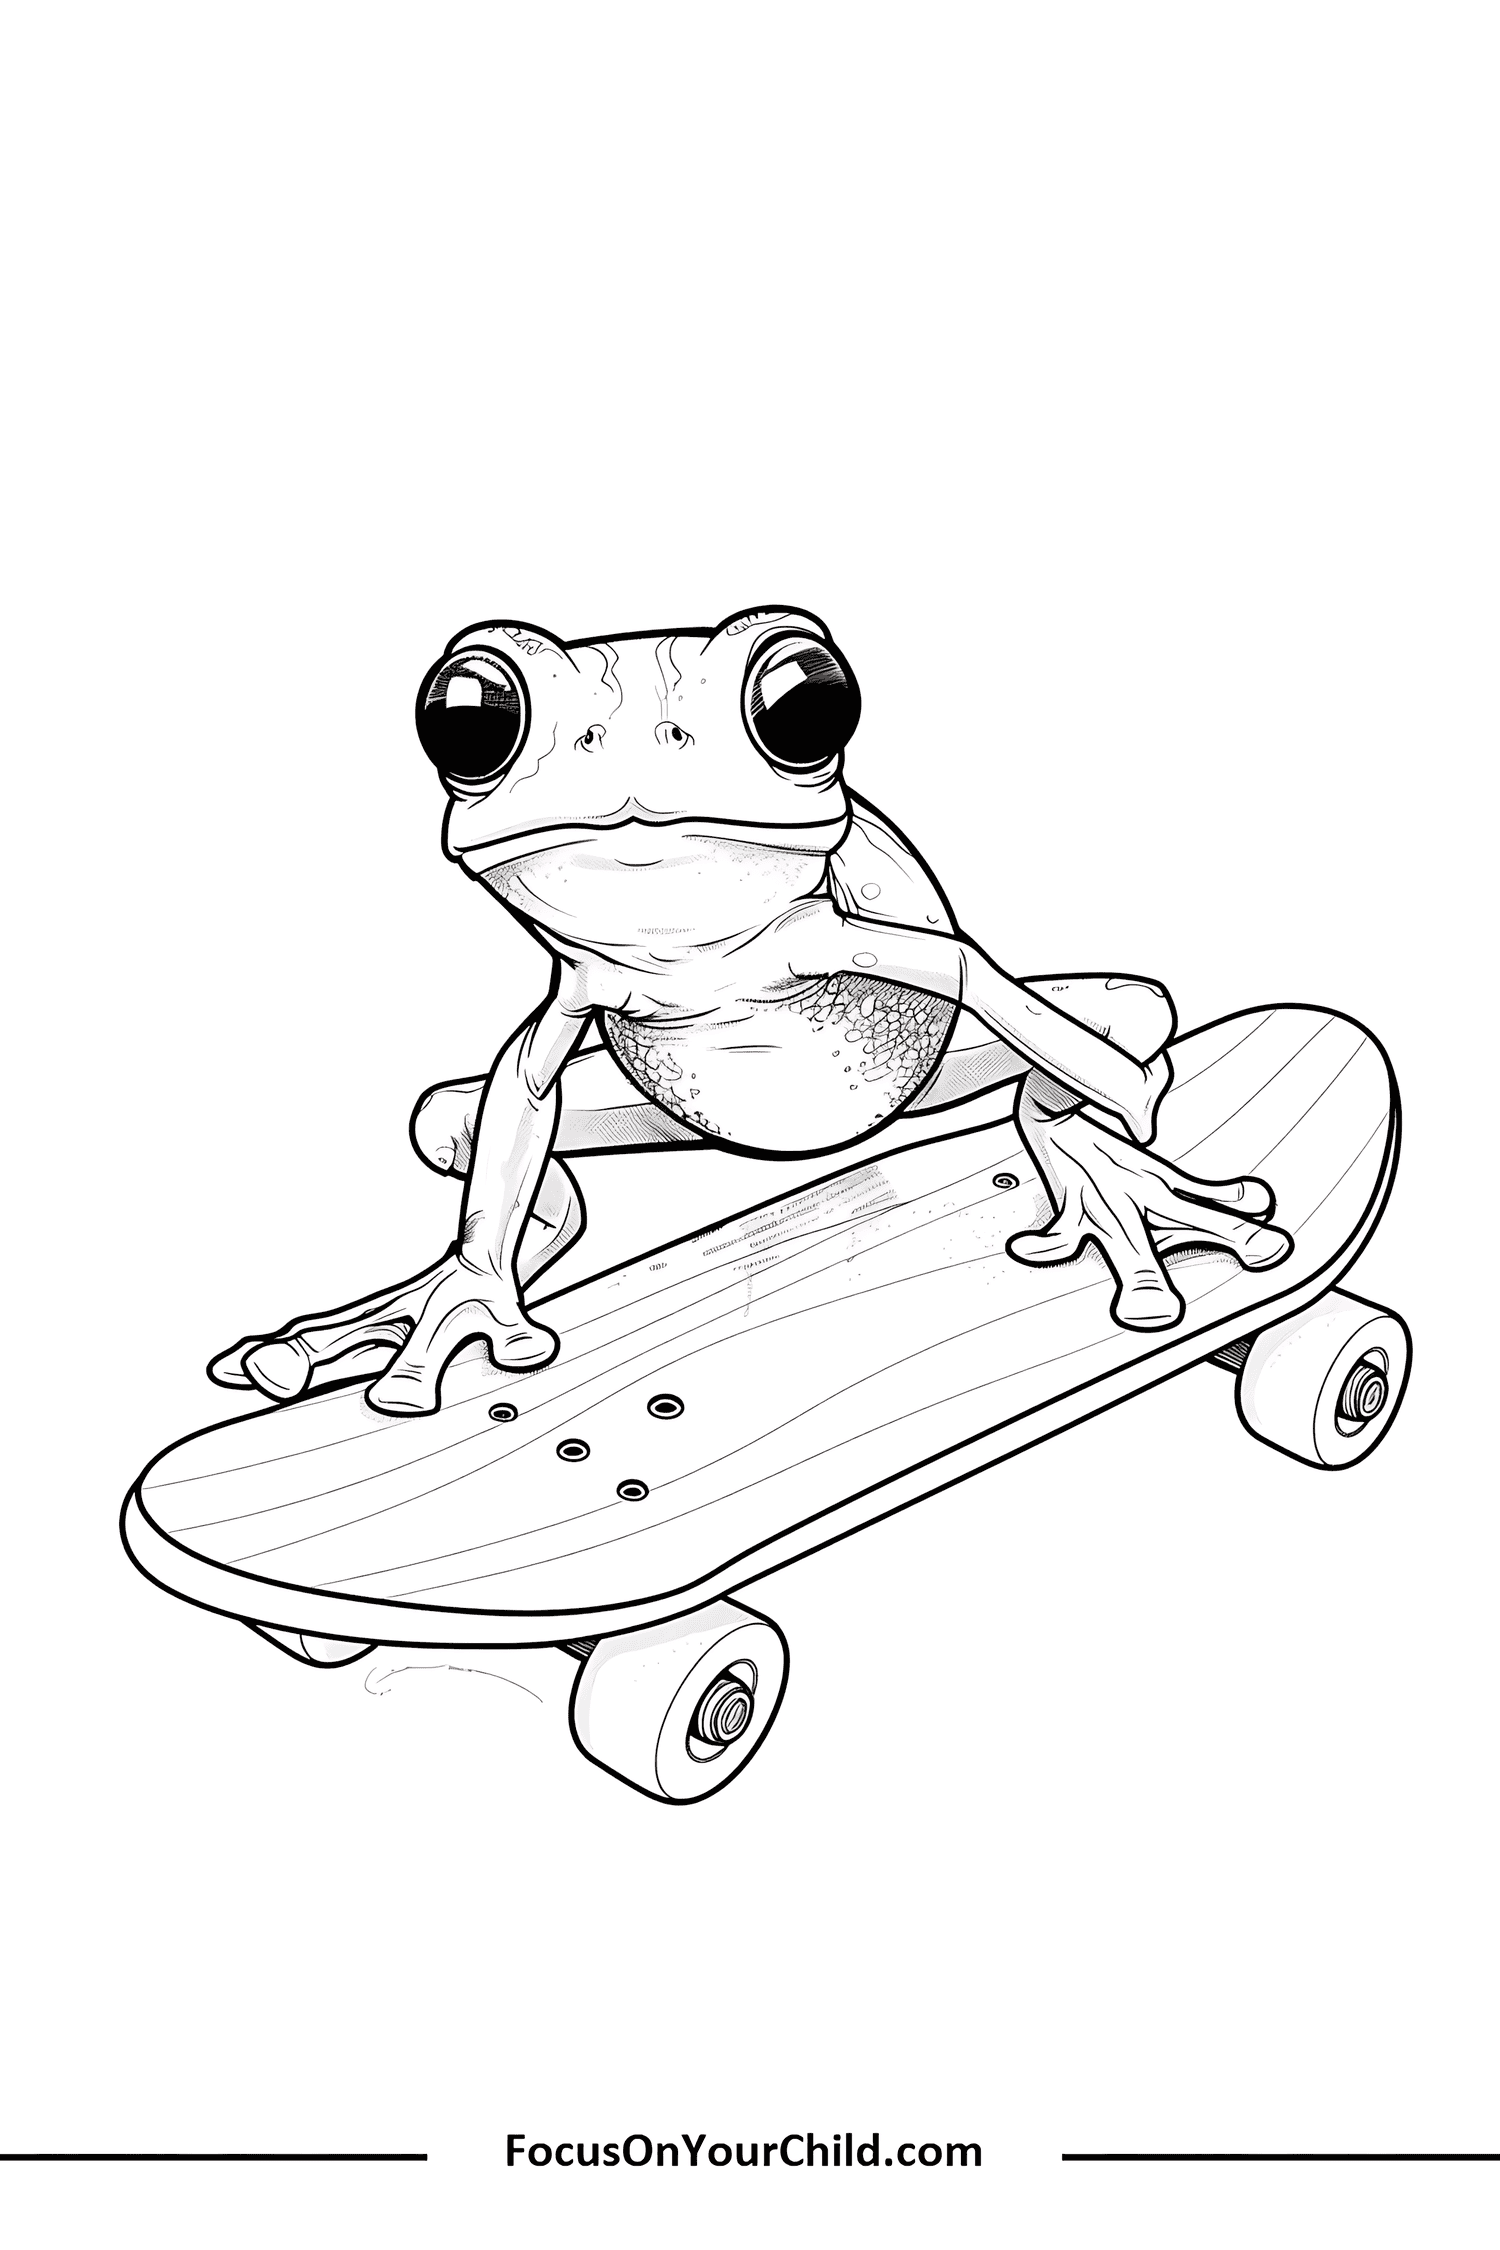 Playful frog on skateboard illustration for childrens educational website.